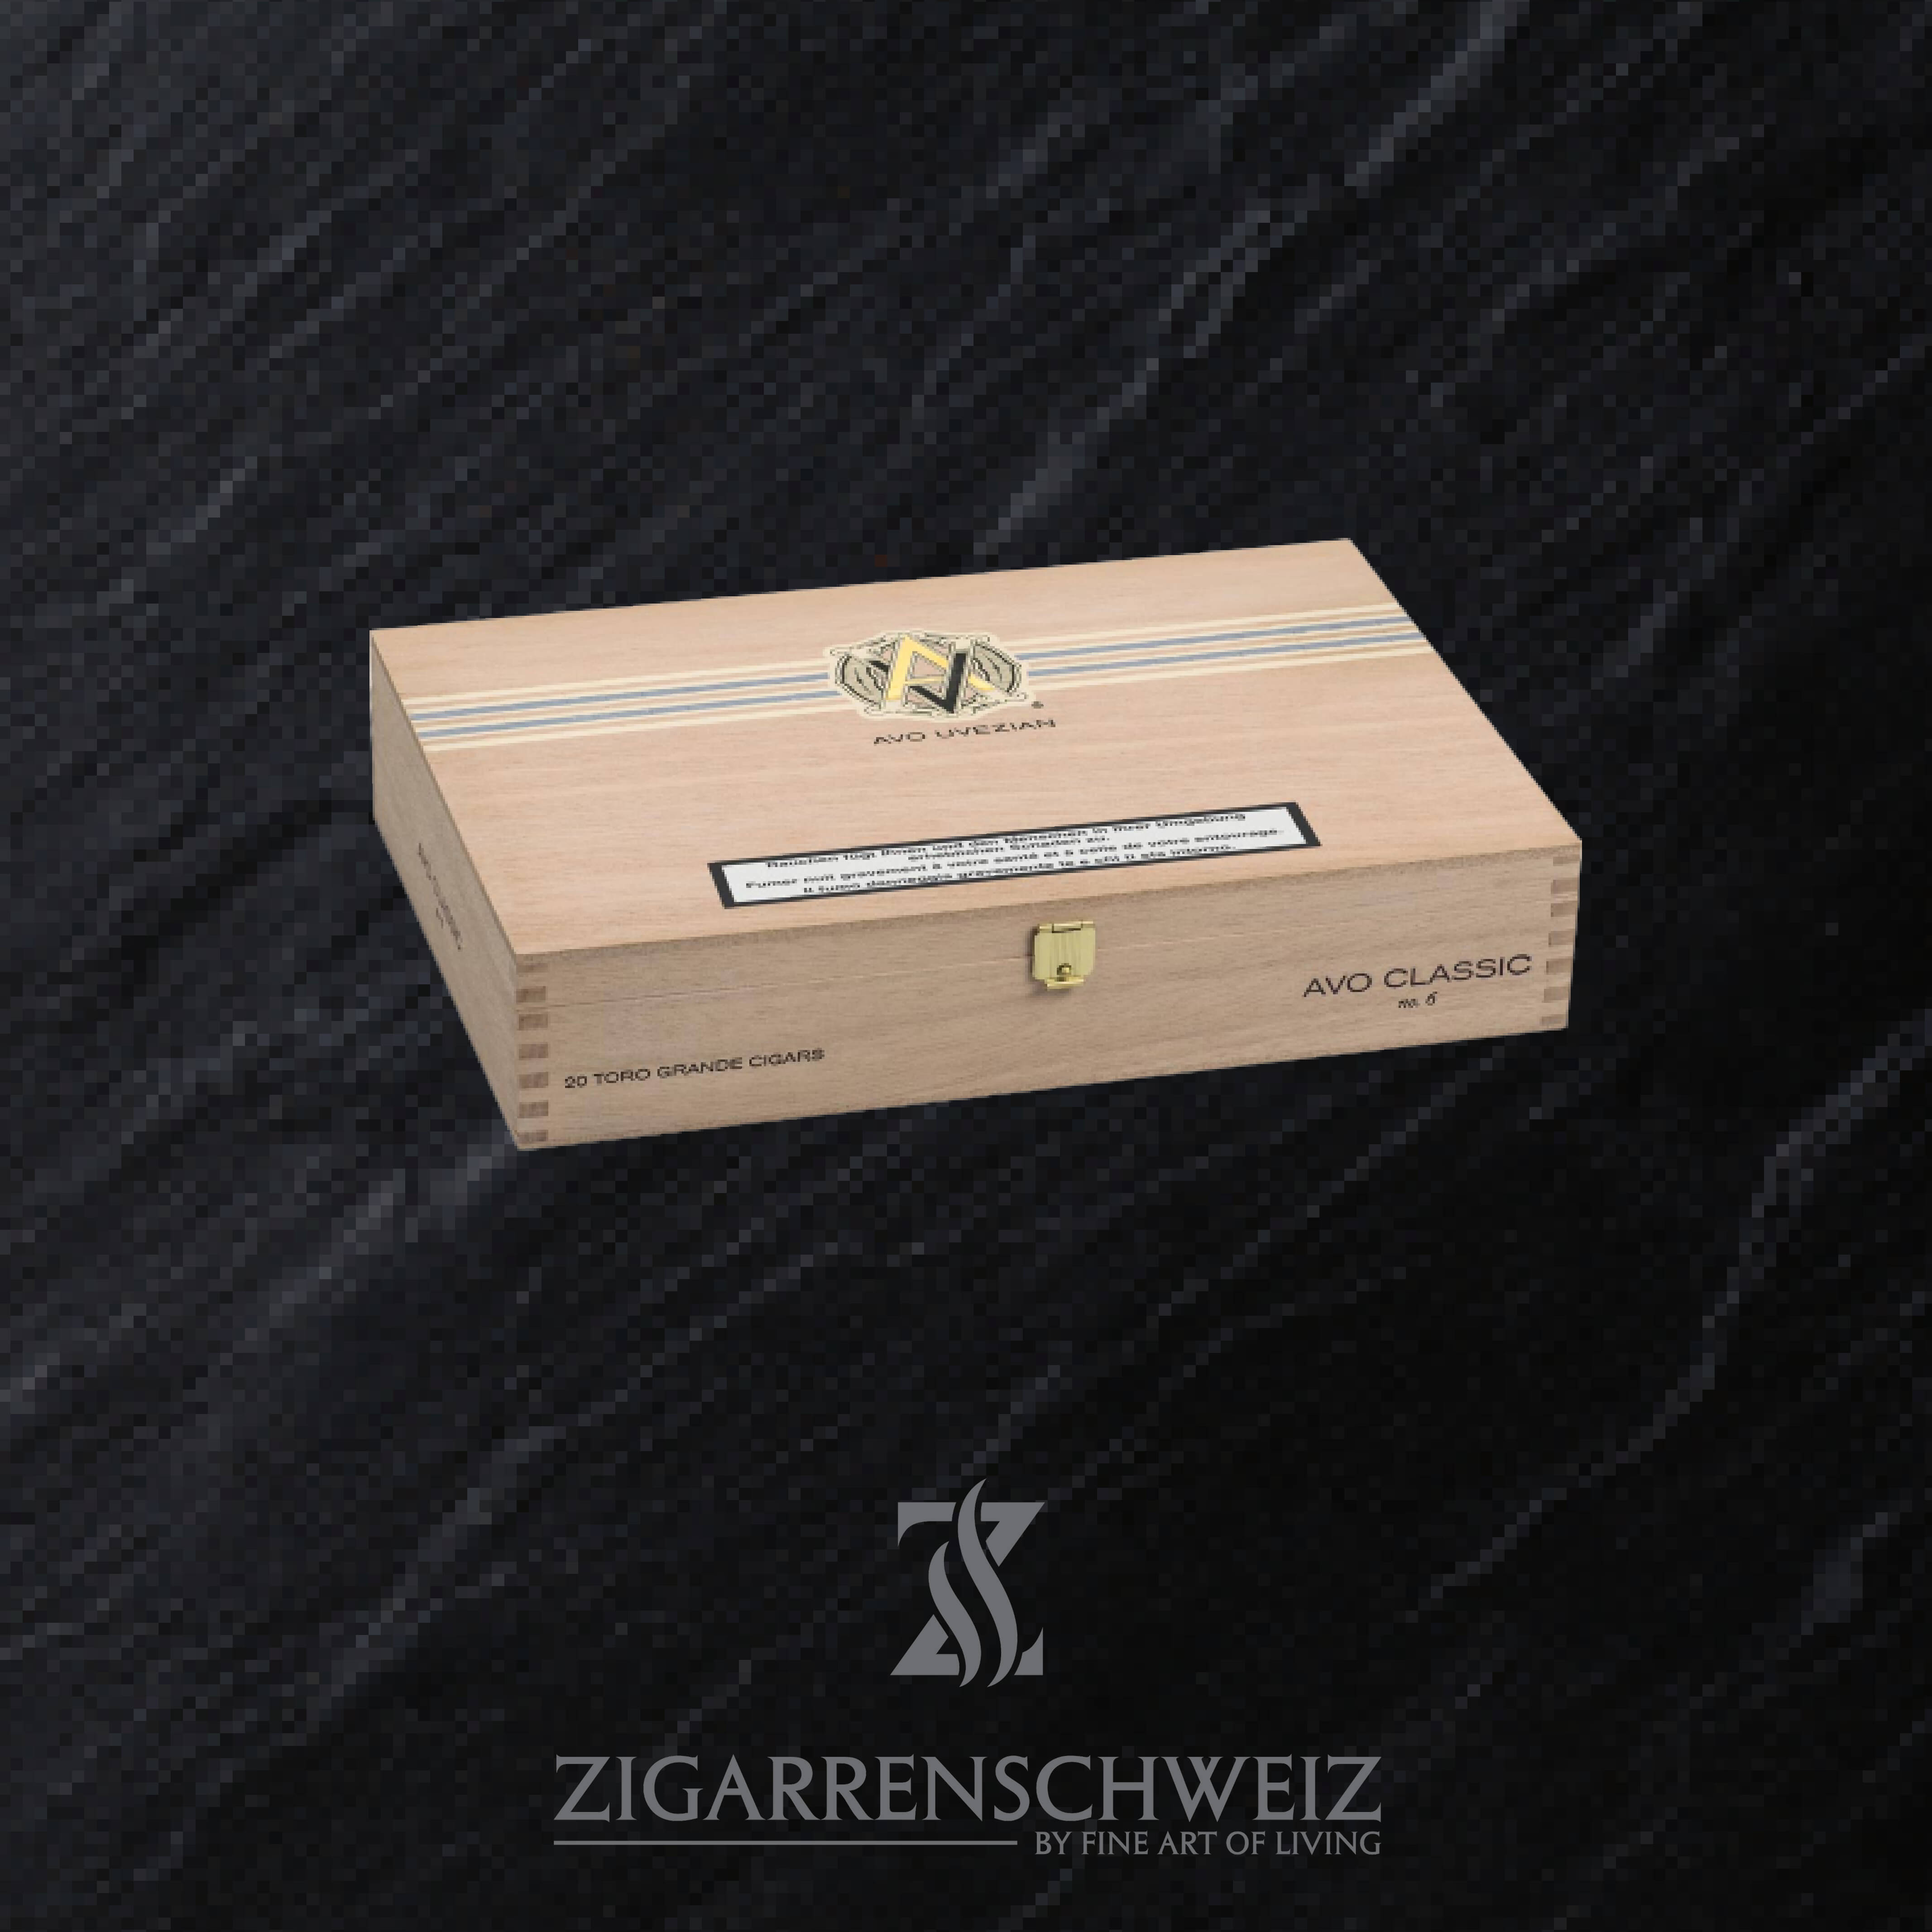 AVO Classic No. 6 Toro Grande Zigarren Kiste geschlossen